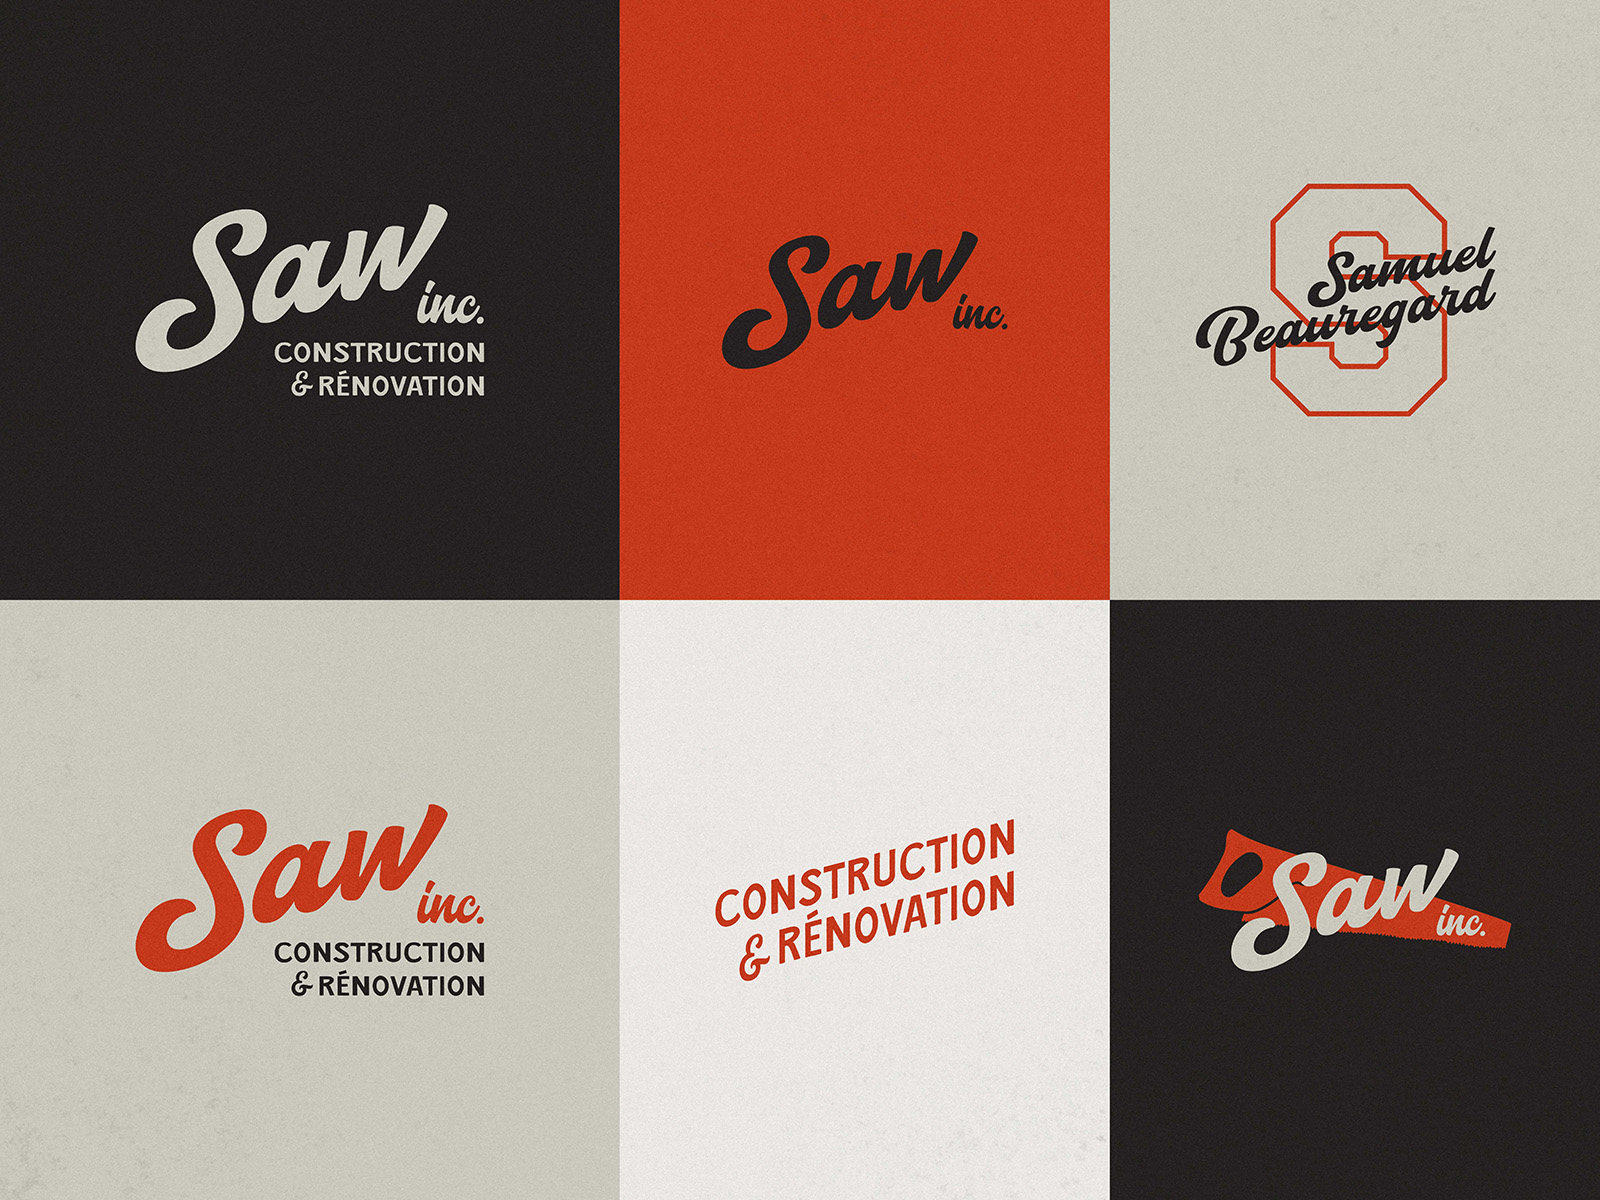 ensemble de logos, déclinaisons graphiques pour l'univers identitaire SAW inc.